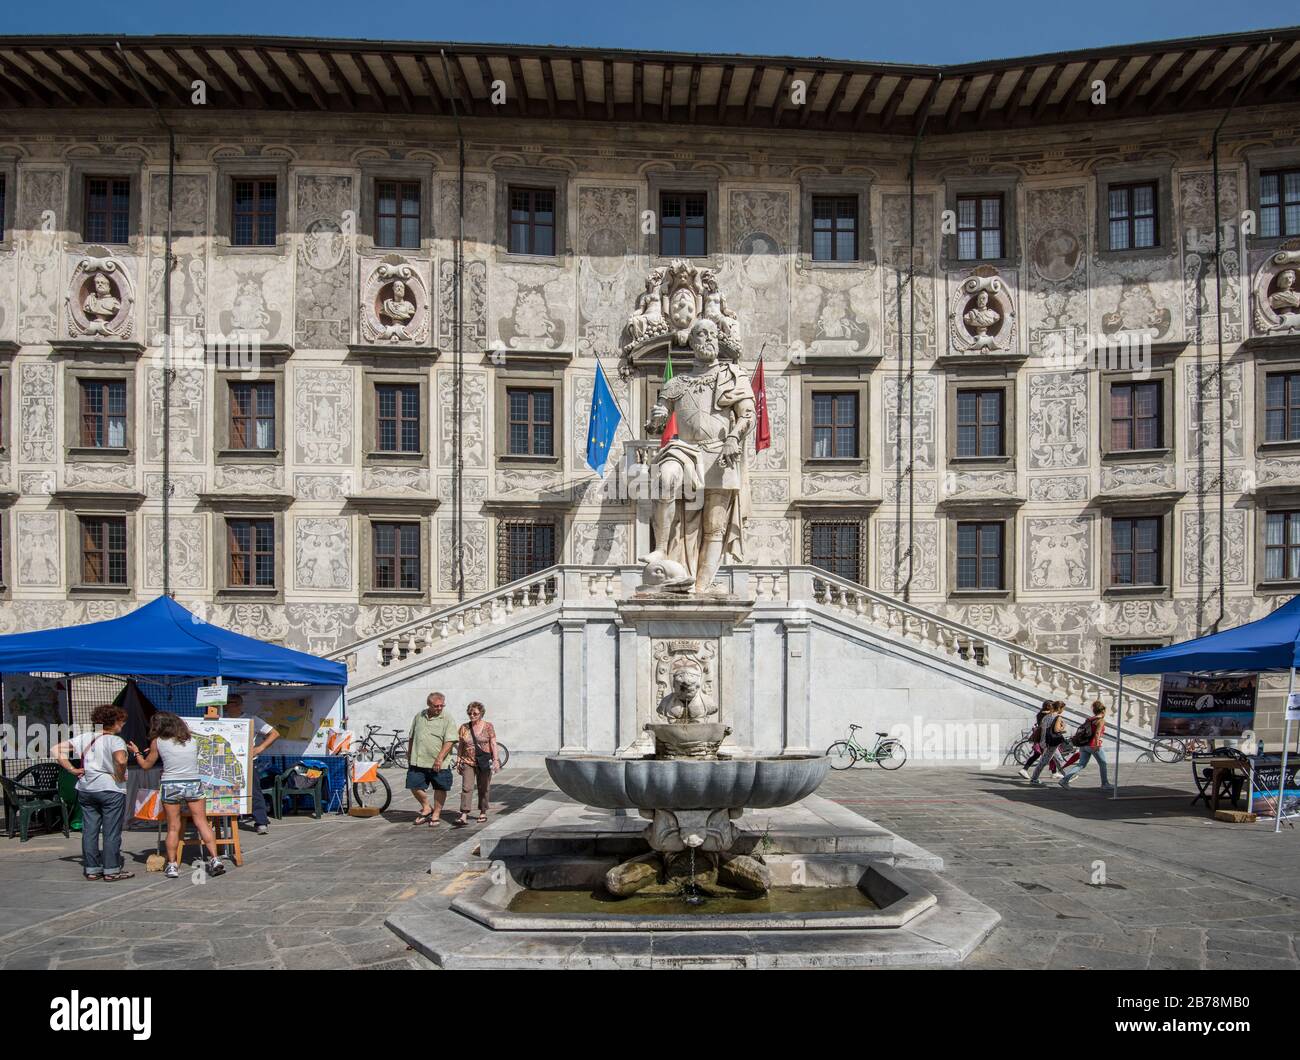 Palazzo della Caravona, the main building of the world famous university Scuola Normale Superiore at Piazza dei Cavalieri in Pisa Italy Stock Photo